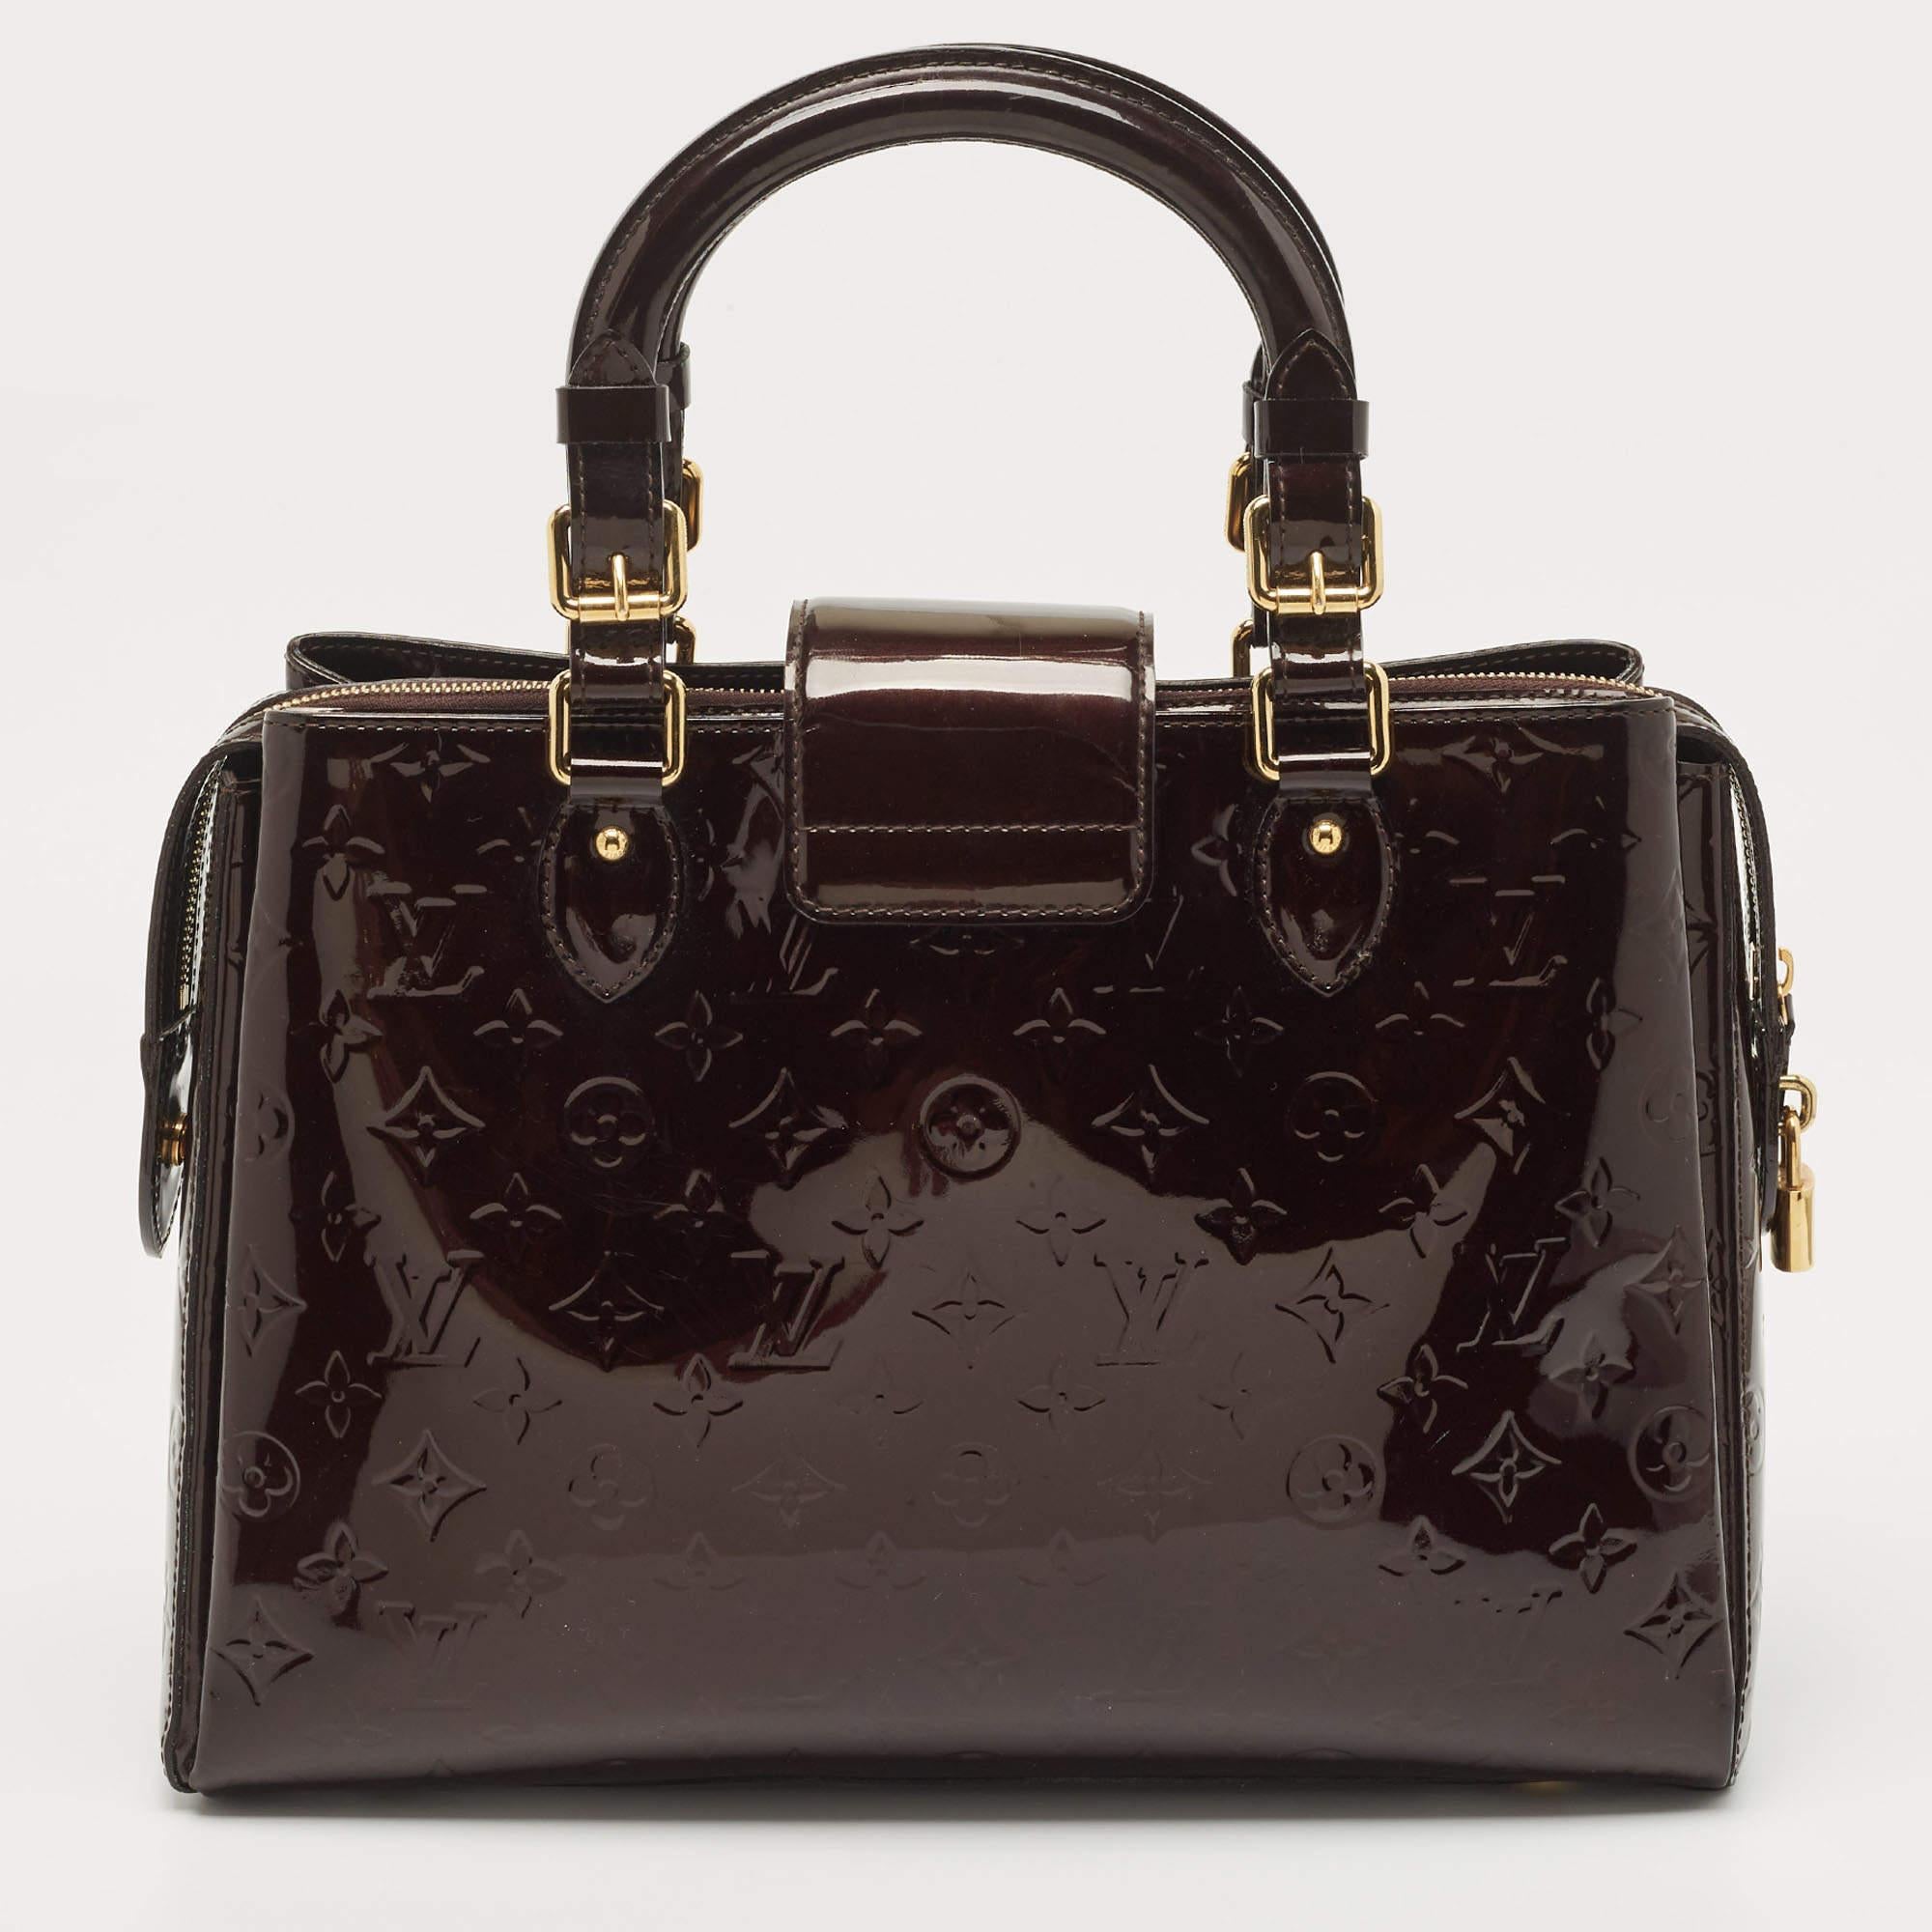 Die Kreationen von Louis Vuitton sind wegen ihres hohen Stils und ihrer Funktionalität beliebt. Diese Tasche ist, wie alle anderen Handtaschen auch, robust und stilvoll. Die Tasche ist fein verarbeitet und bietet ein luxuriöses Erlebnis. Der